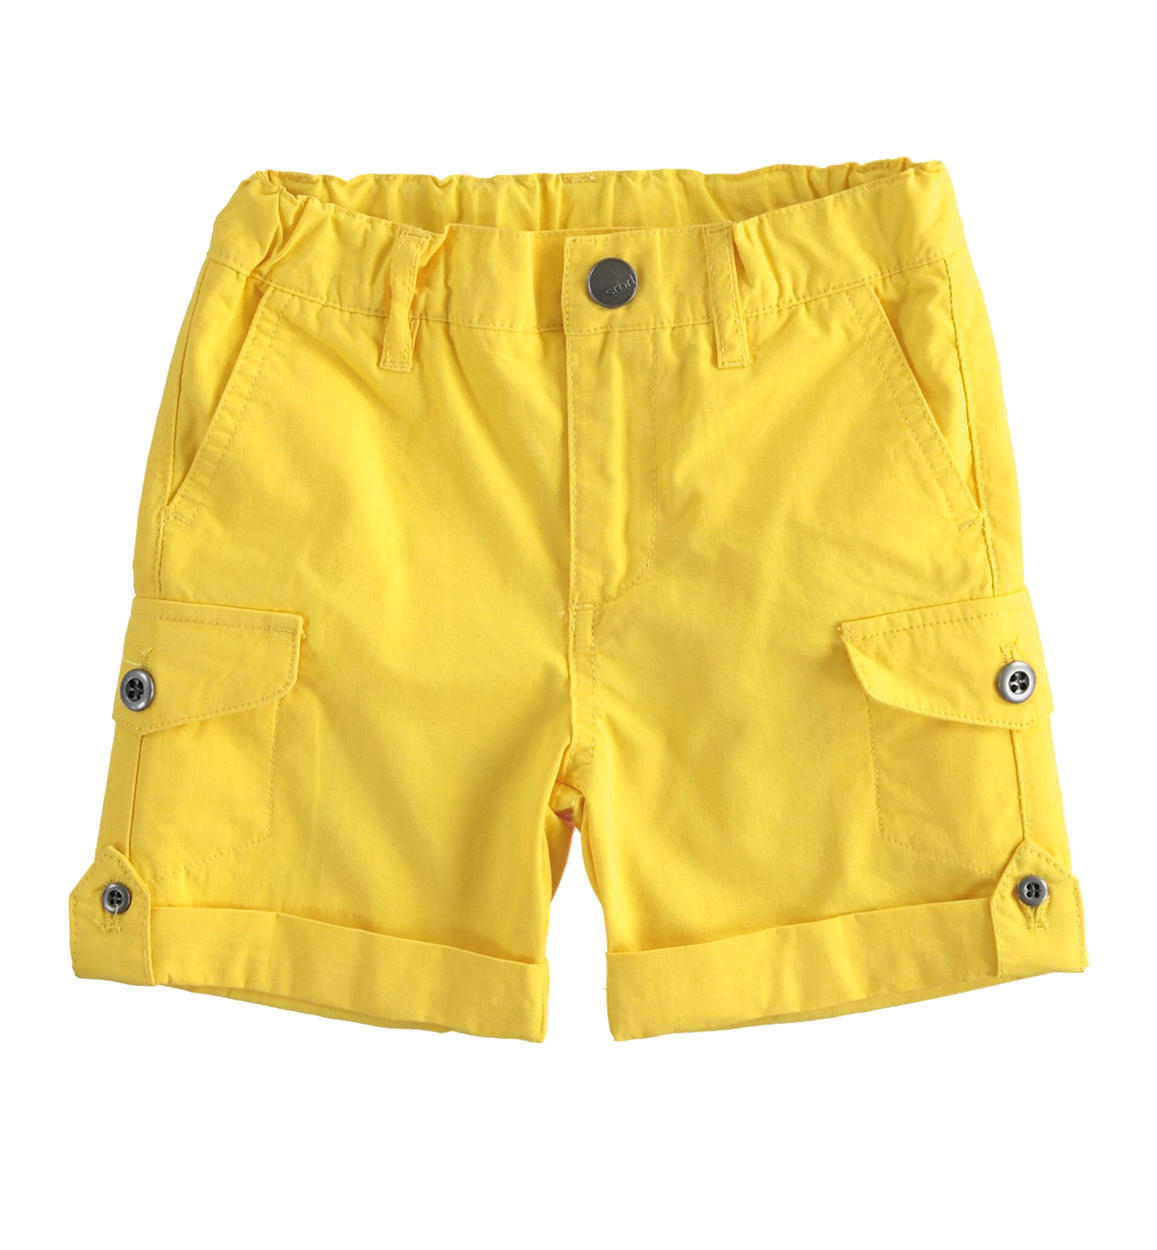 Pantalone corto per bambino con tasche laterali GIALLO Sarabanda